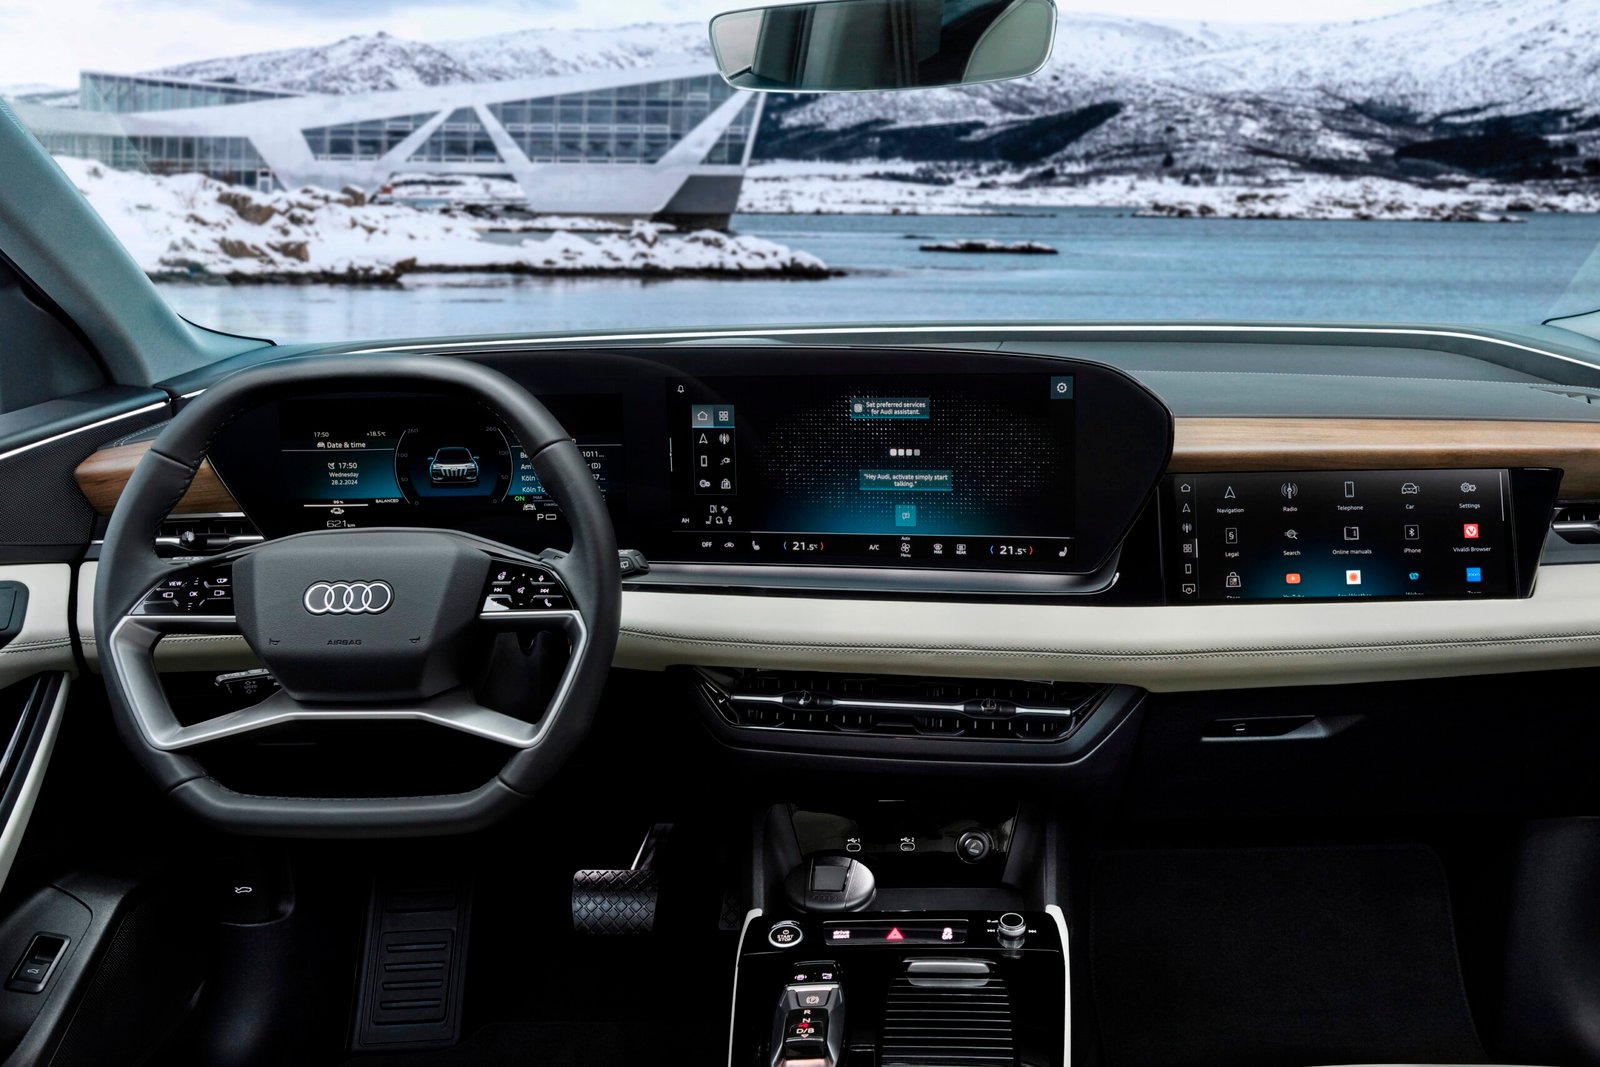 VW Integrasikan Chat GPT ke Audi